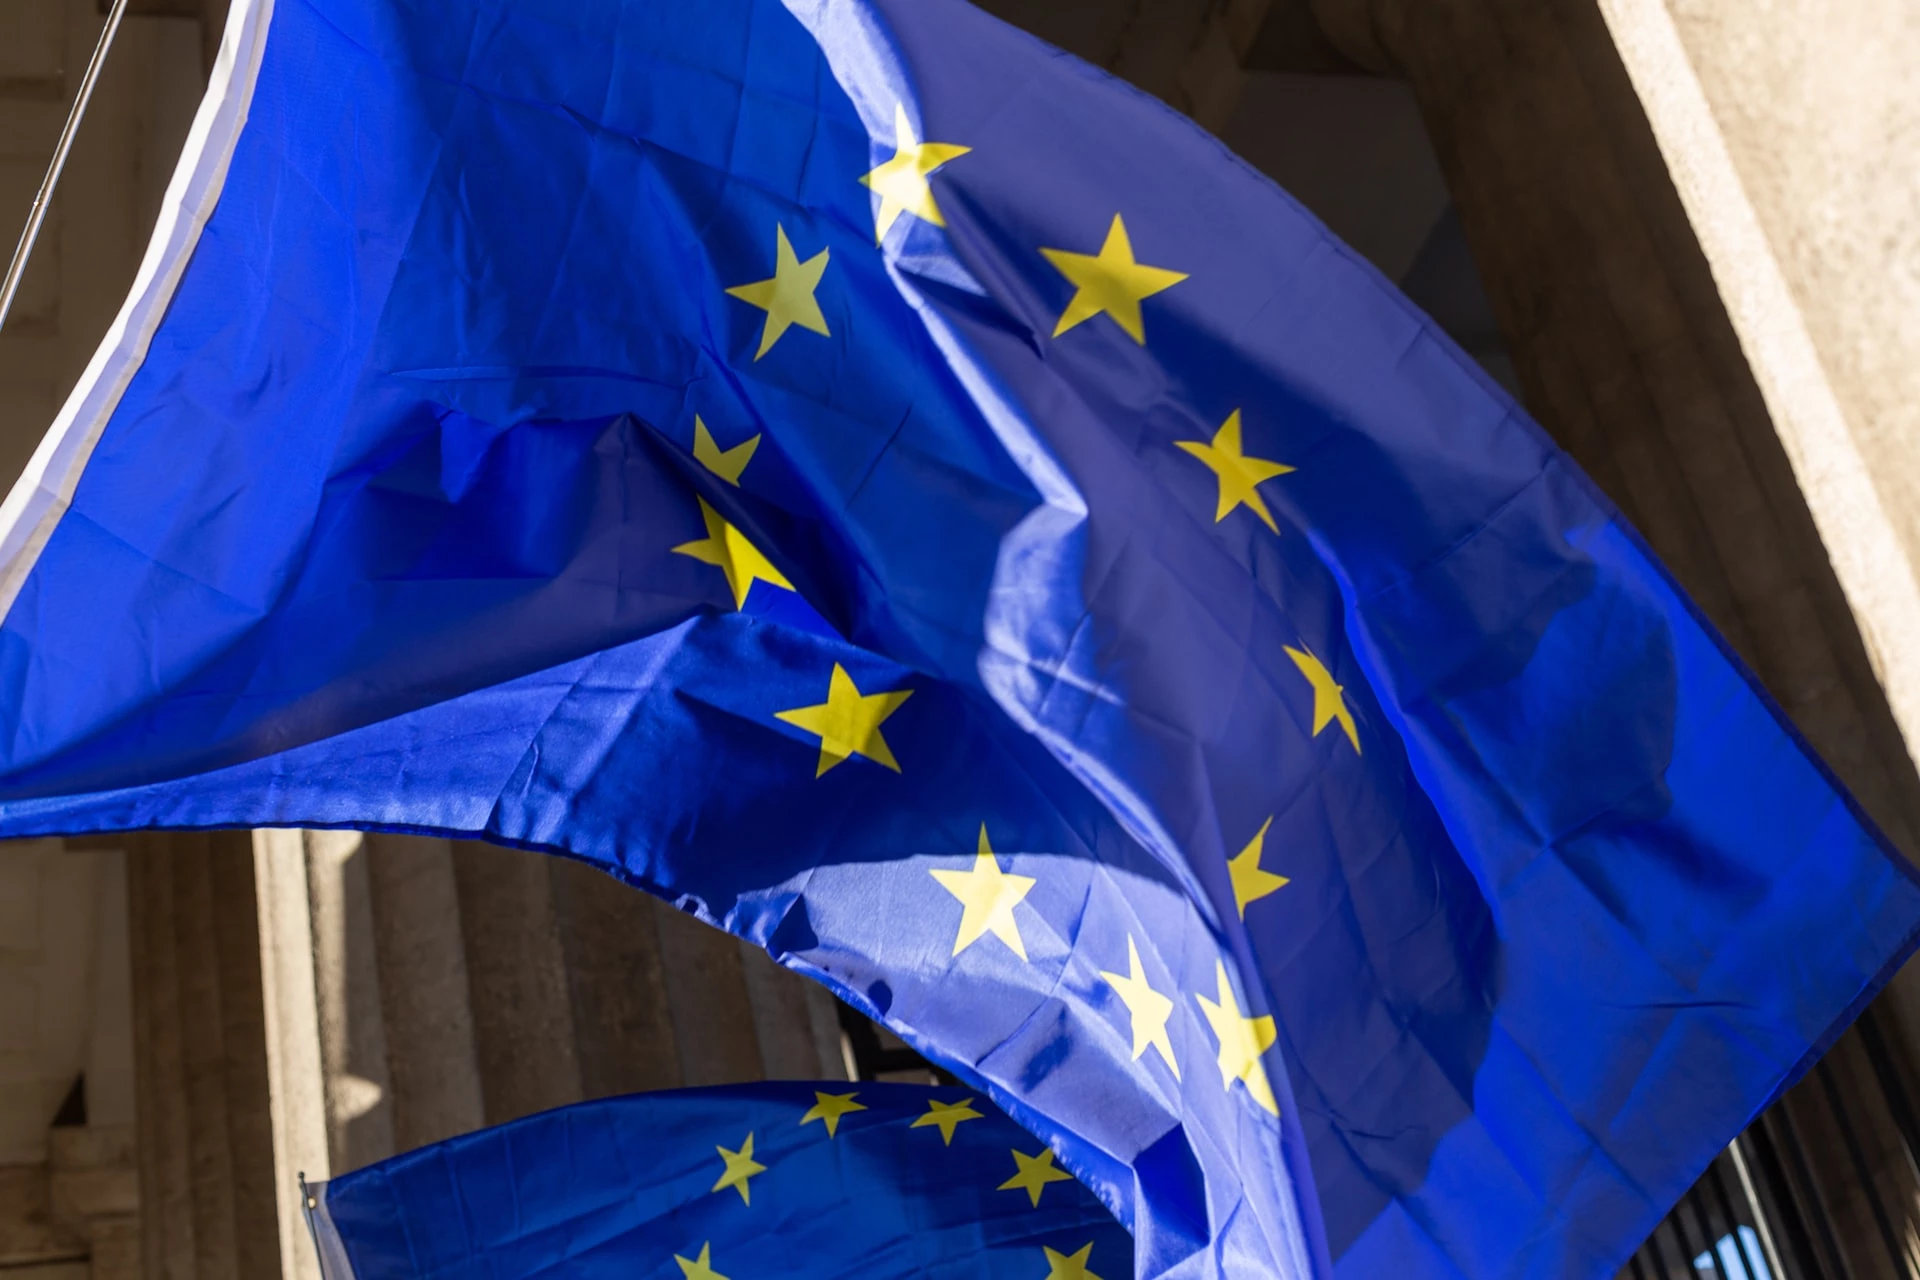 ES šalys preliminariai sutarė dėl naujo sankcijų paketo Rusijai